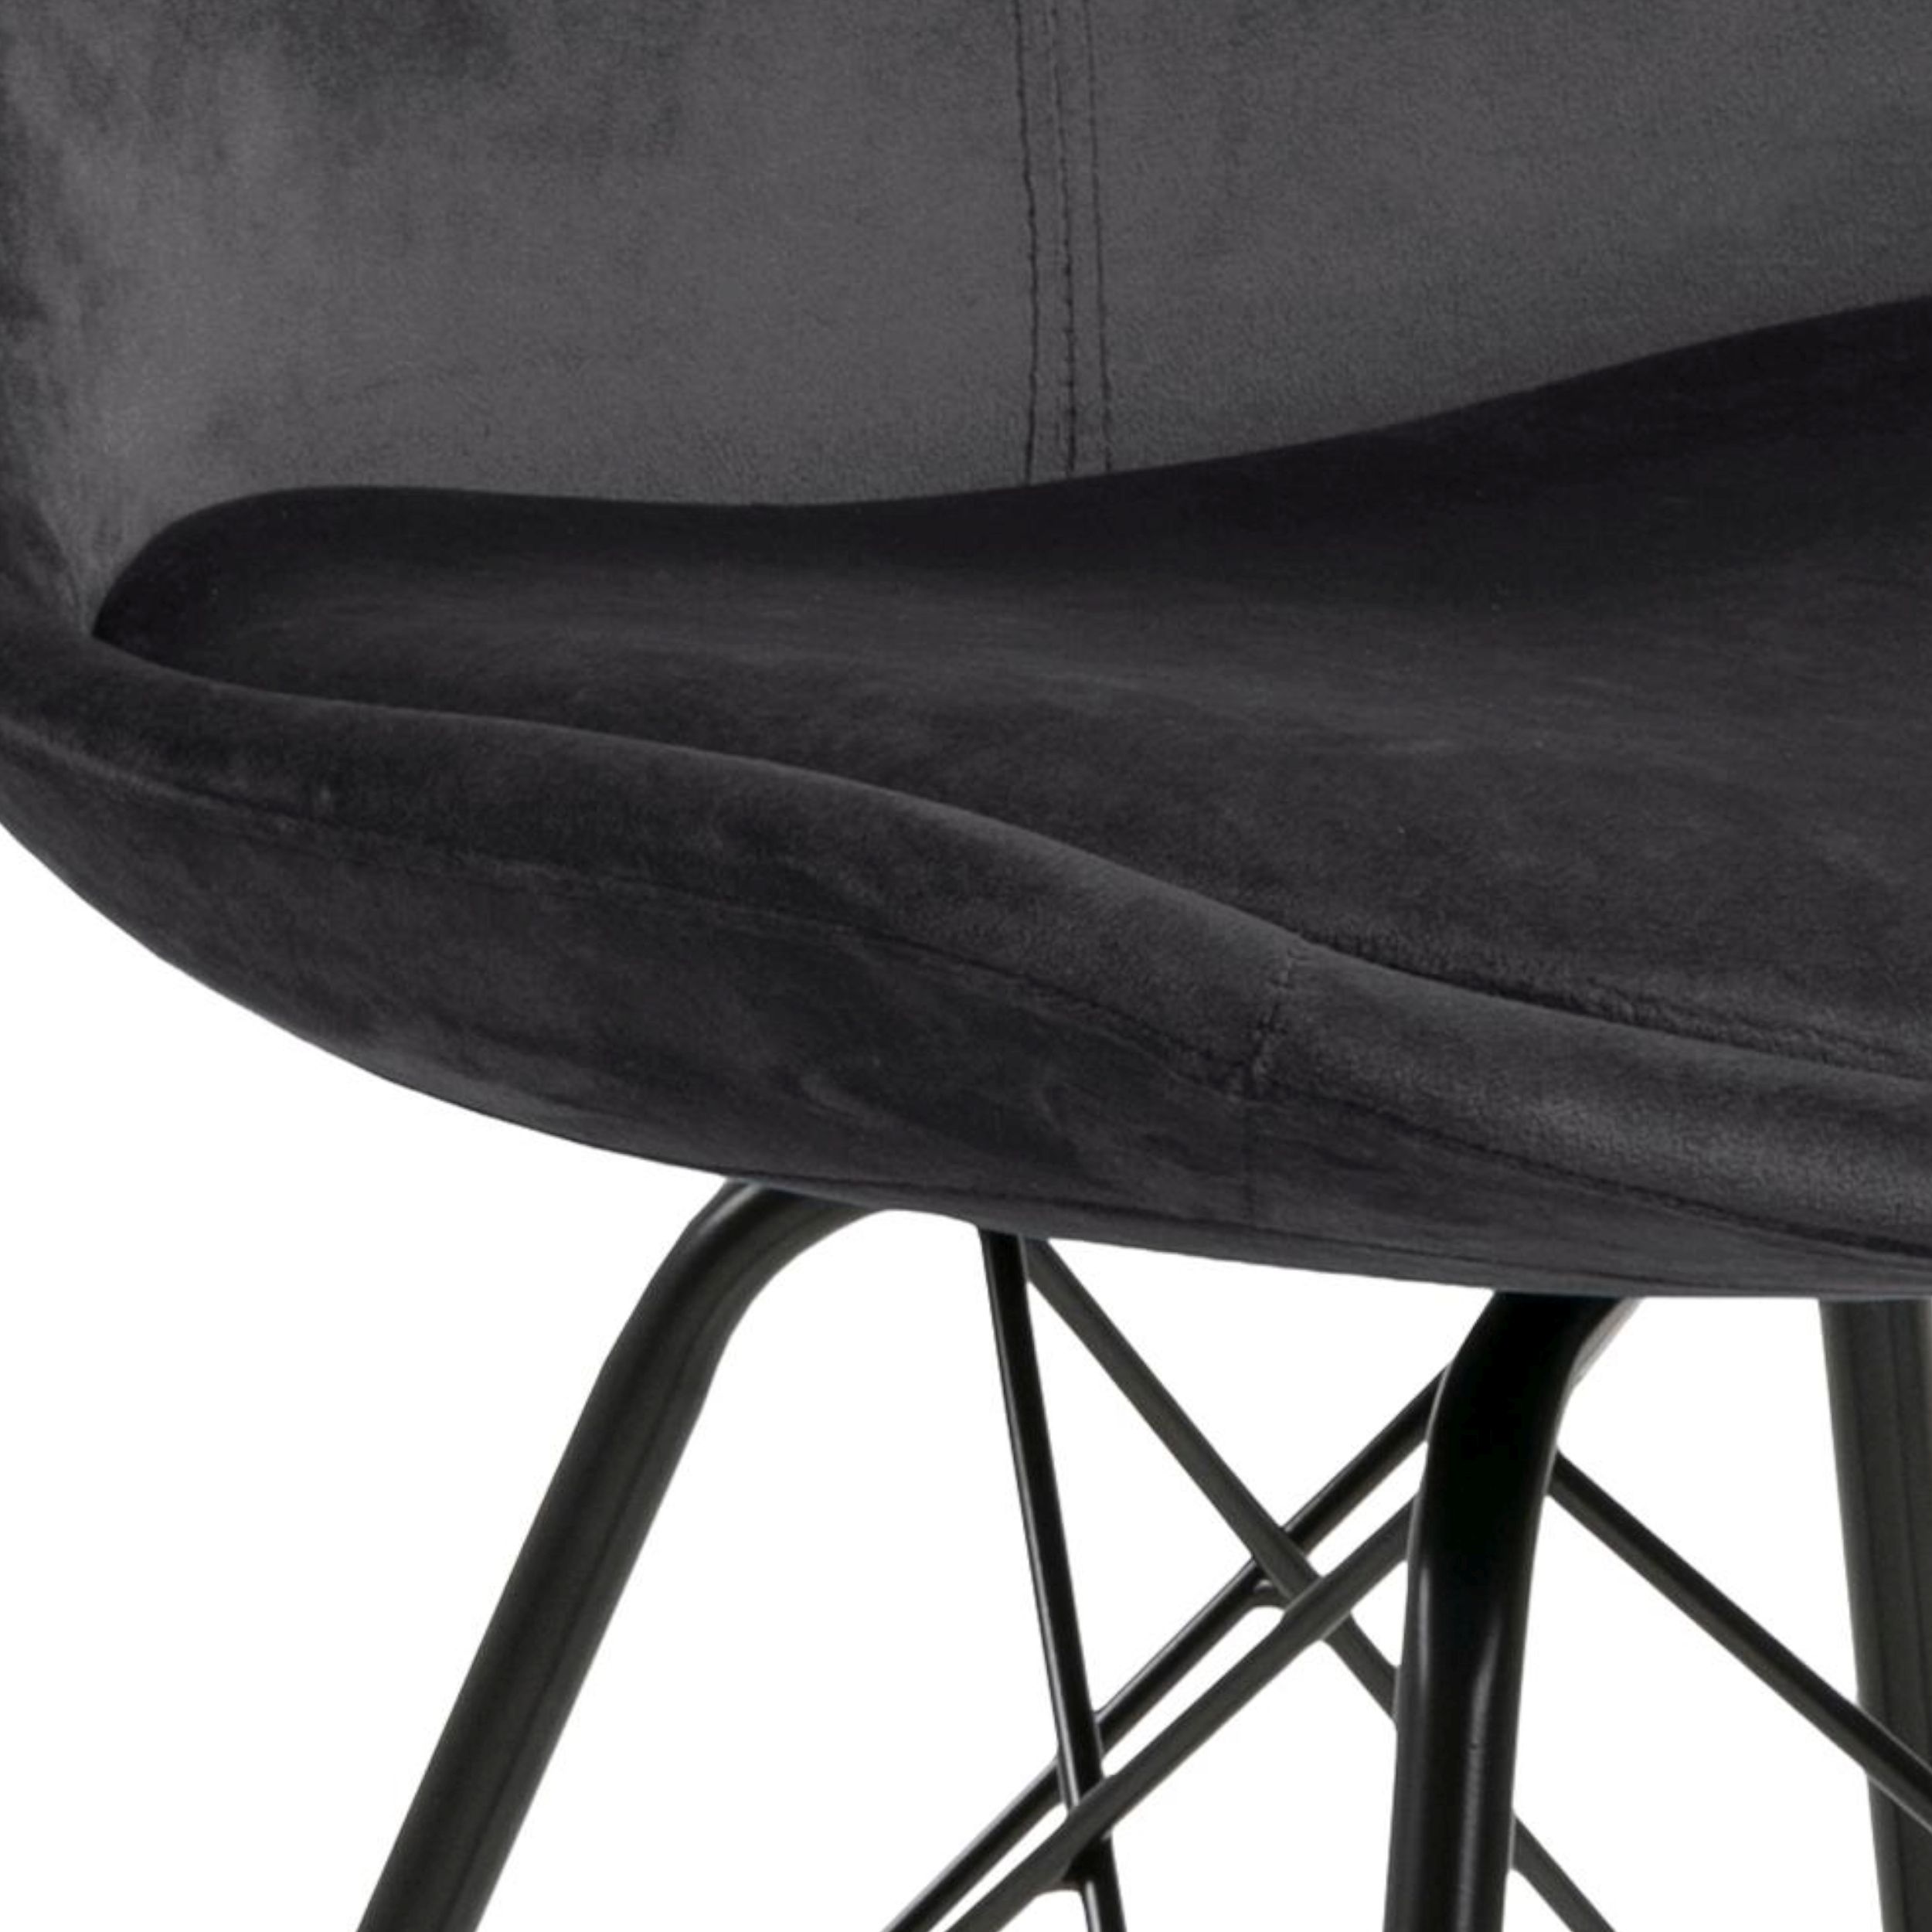 Schalenstuhl Arissi in grau. Detailbild der Sitzschale